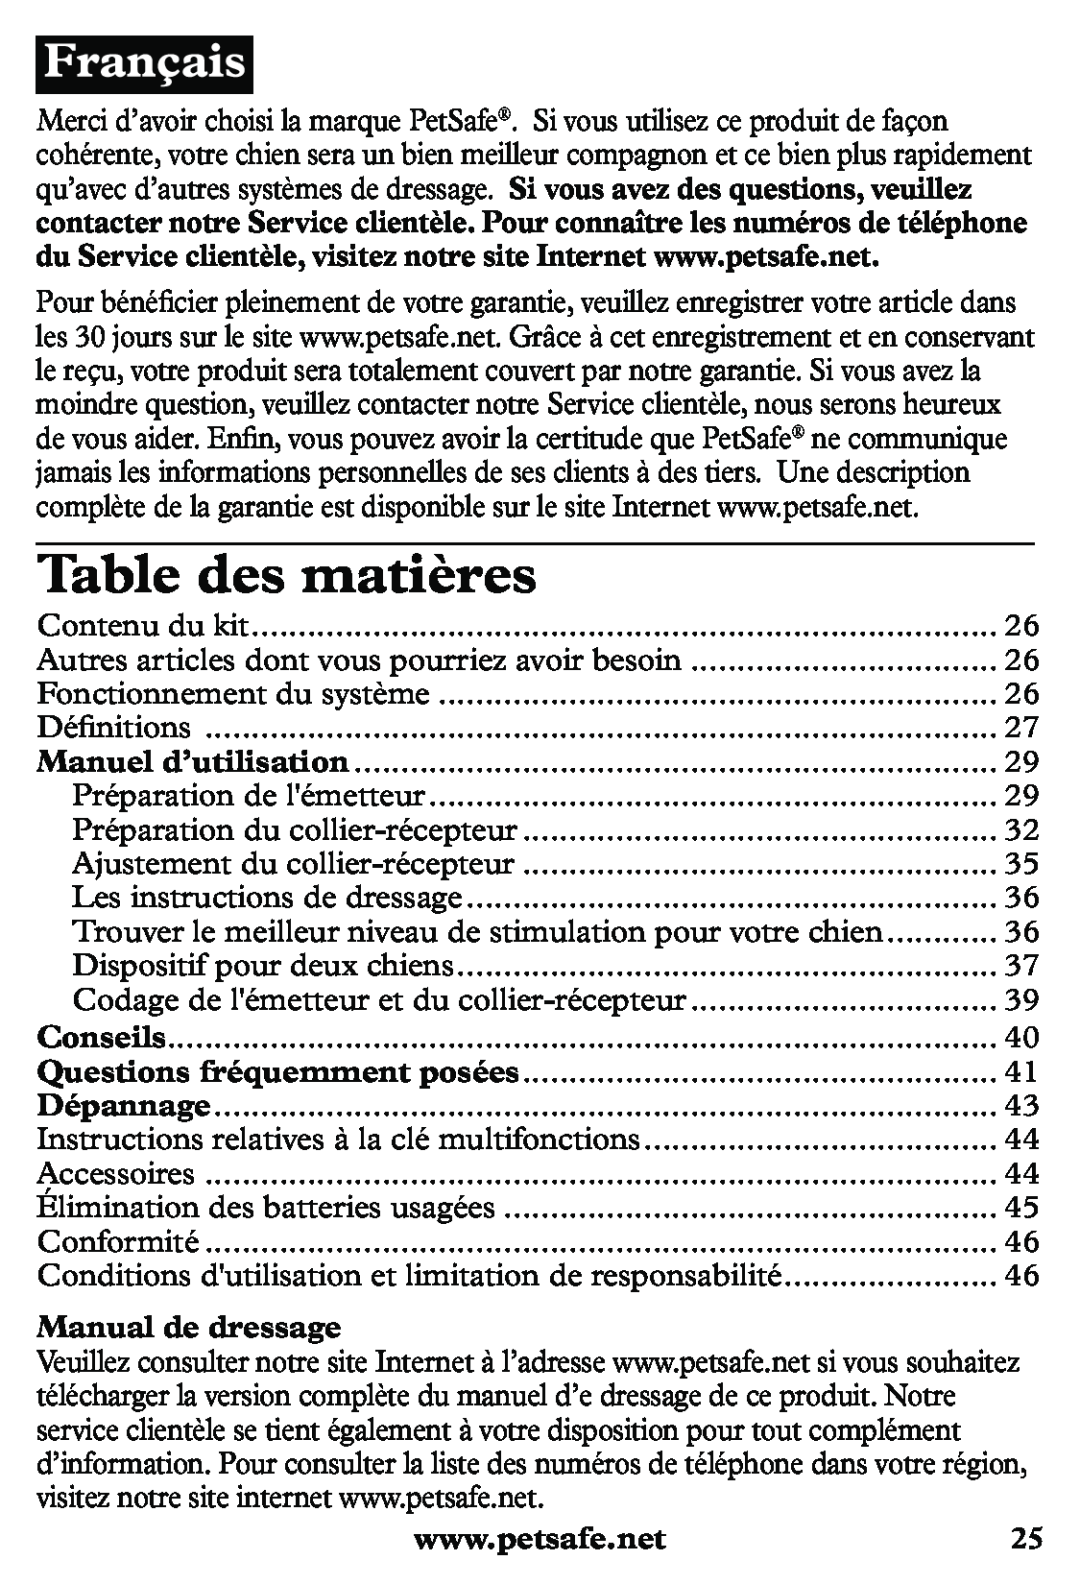 Petsafe PDT20-11939 manuel dutilisation Table des matières, Manual de dressage 